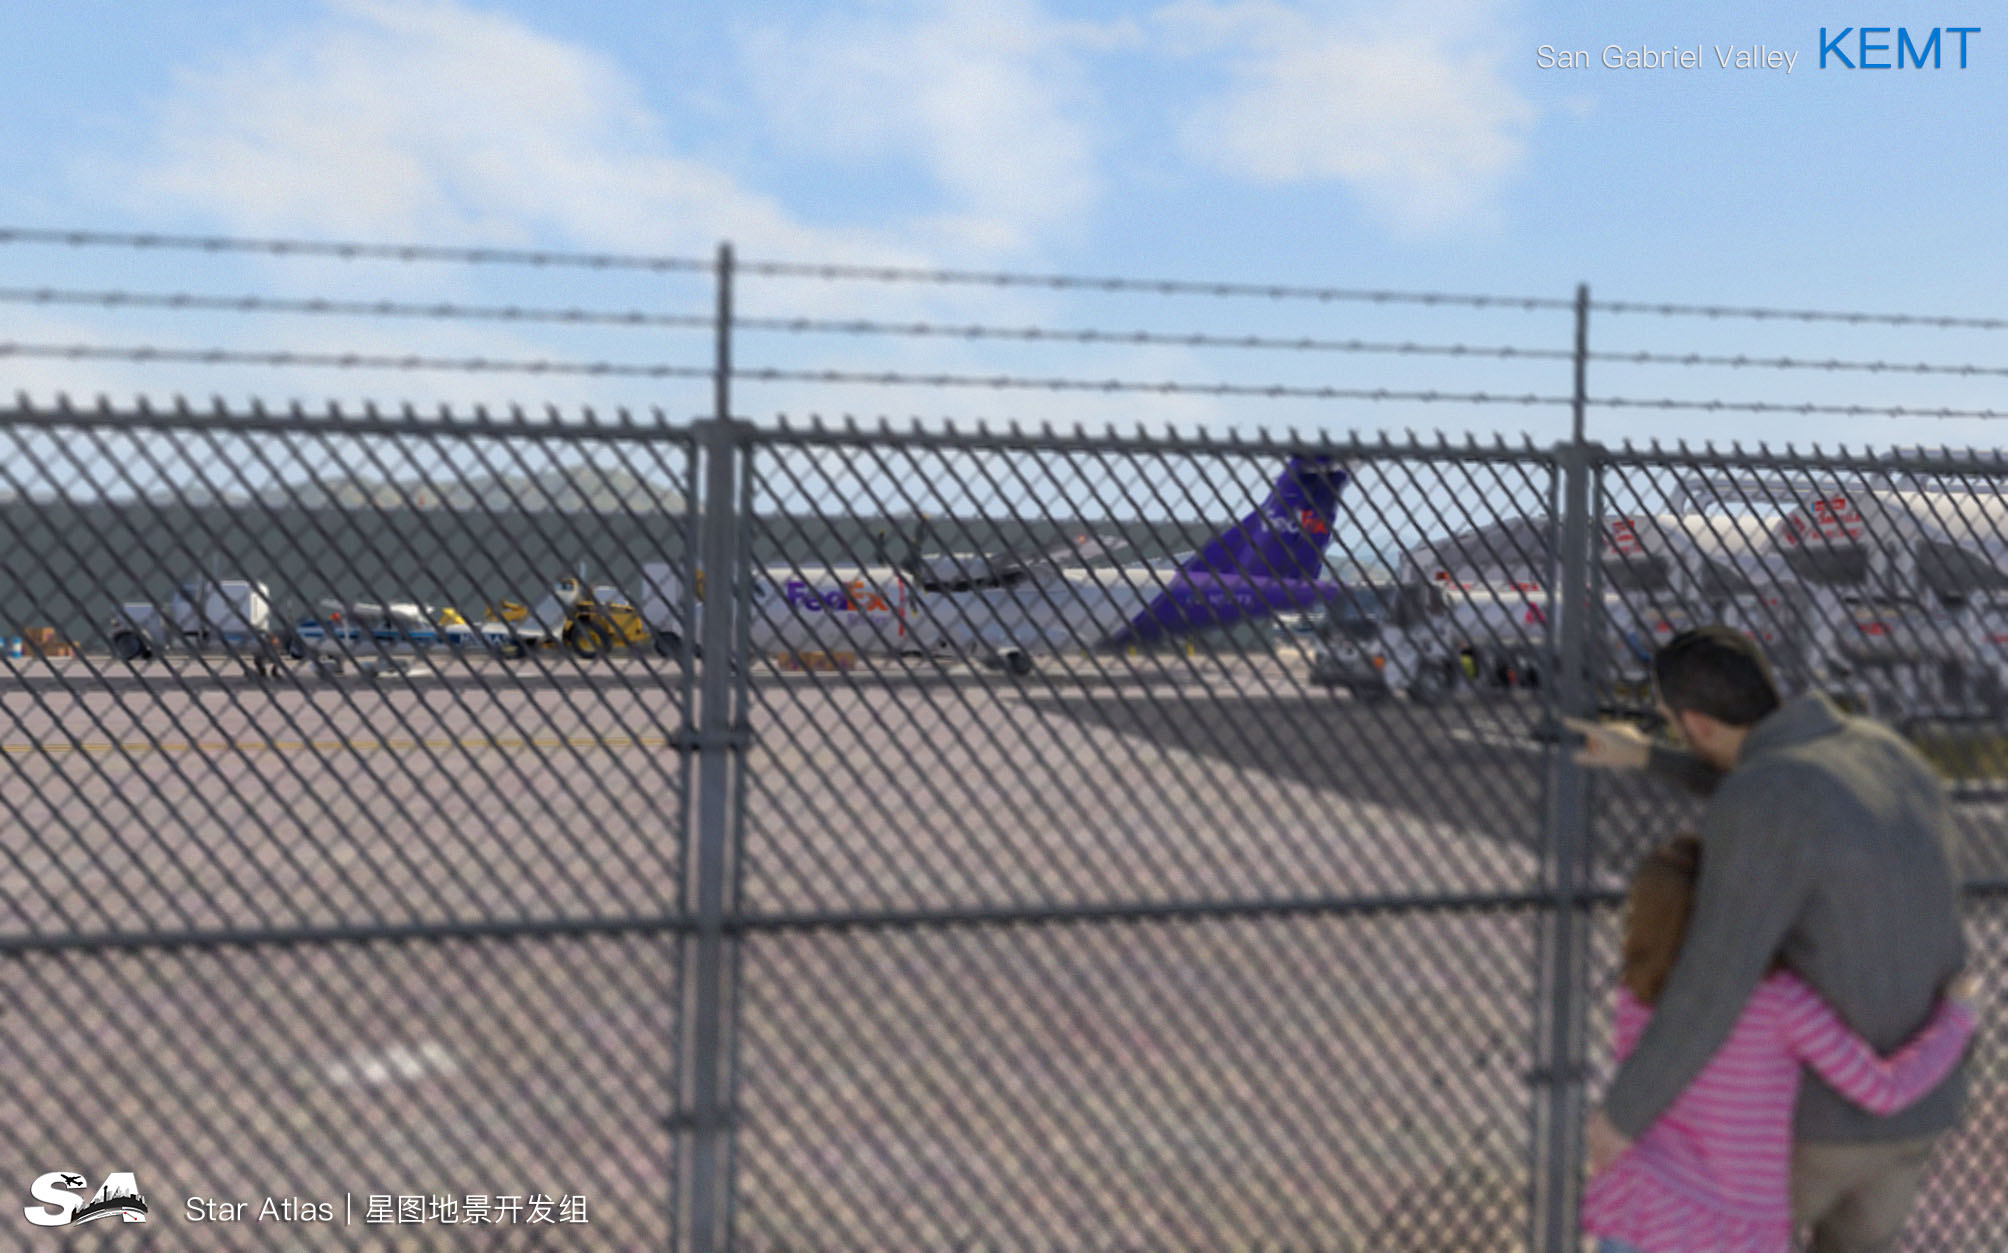 【X-Plane】KEMT-圣盖博谷机场 HD 1.0-6127 